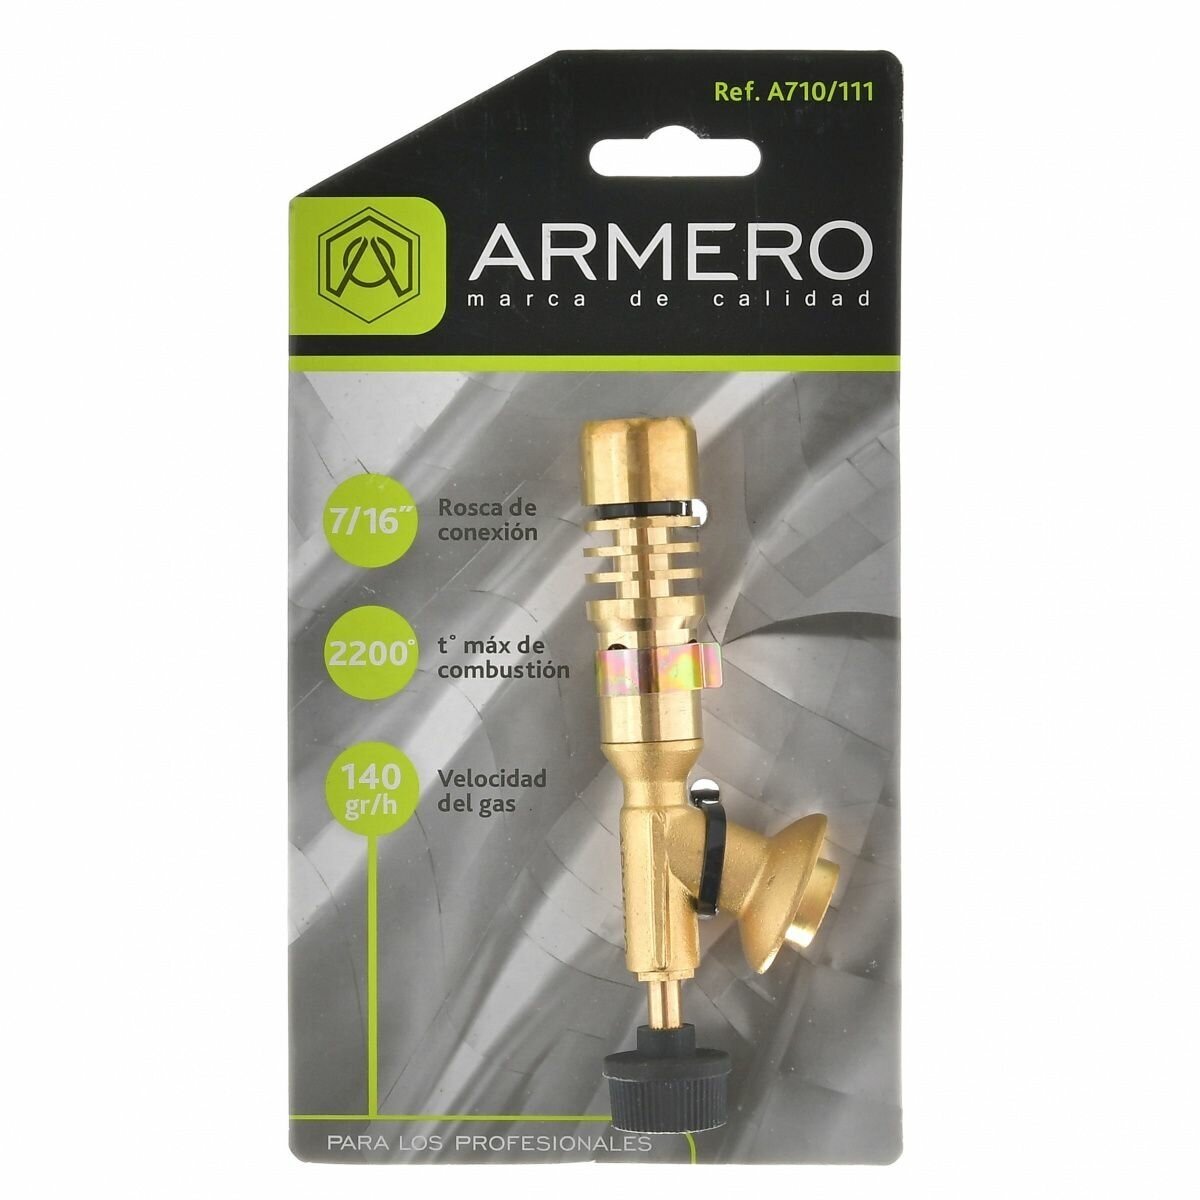 Armero Лампа паяльная mini резьба 7/16 А710/111